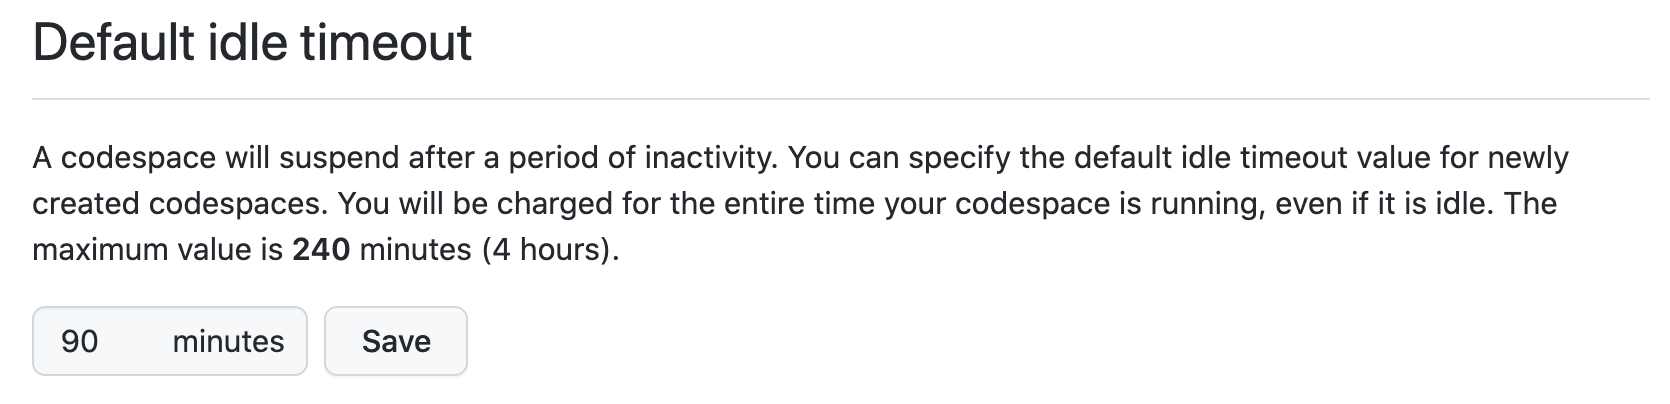 Captura de pantalla de la sección "Tiempo de espera de inactividad predeterminado" de la configuración de Codespaces, con "90 minutos" especificados.